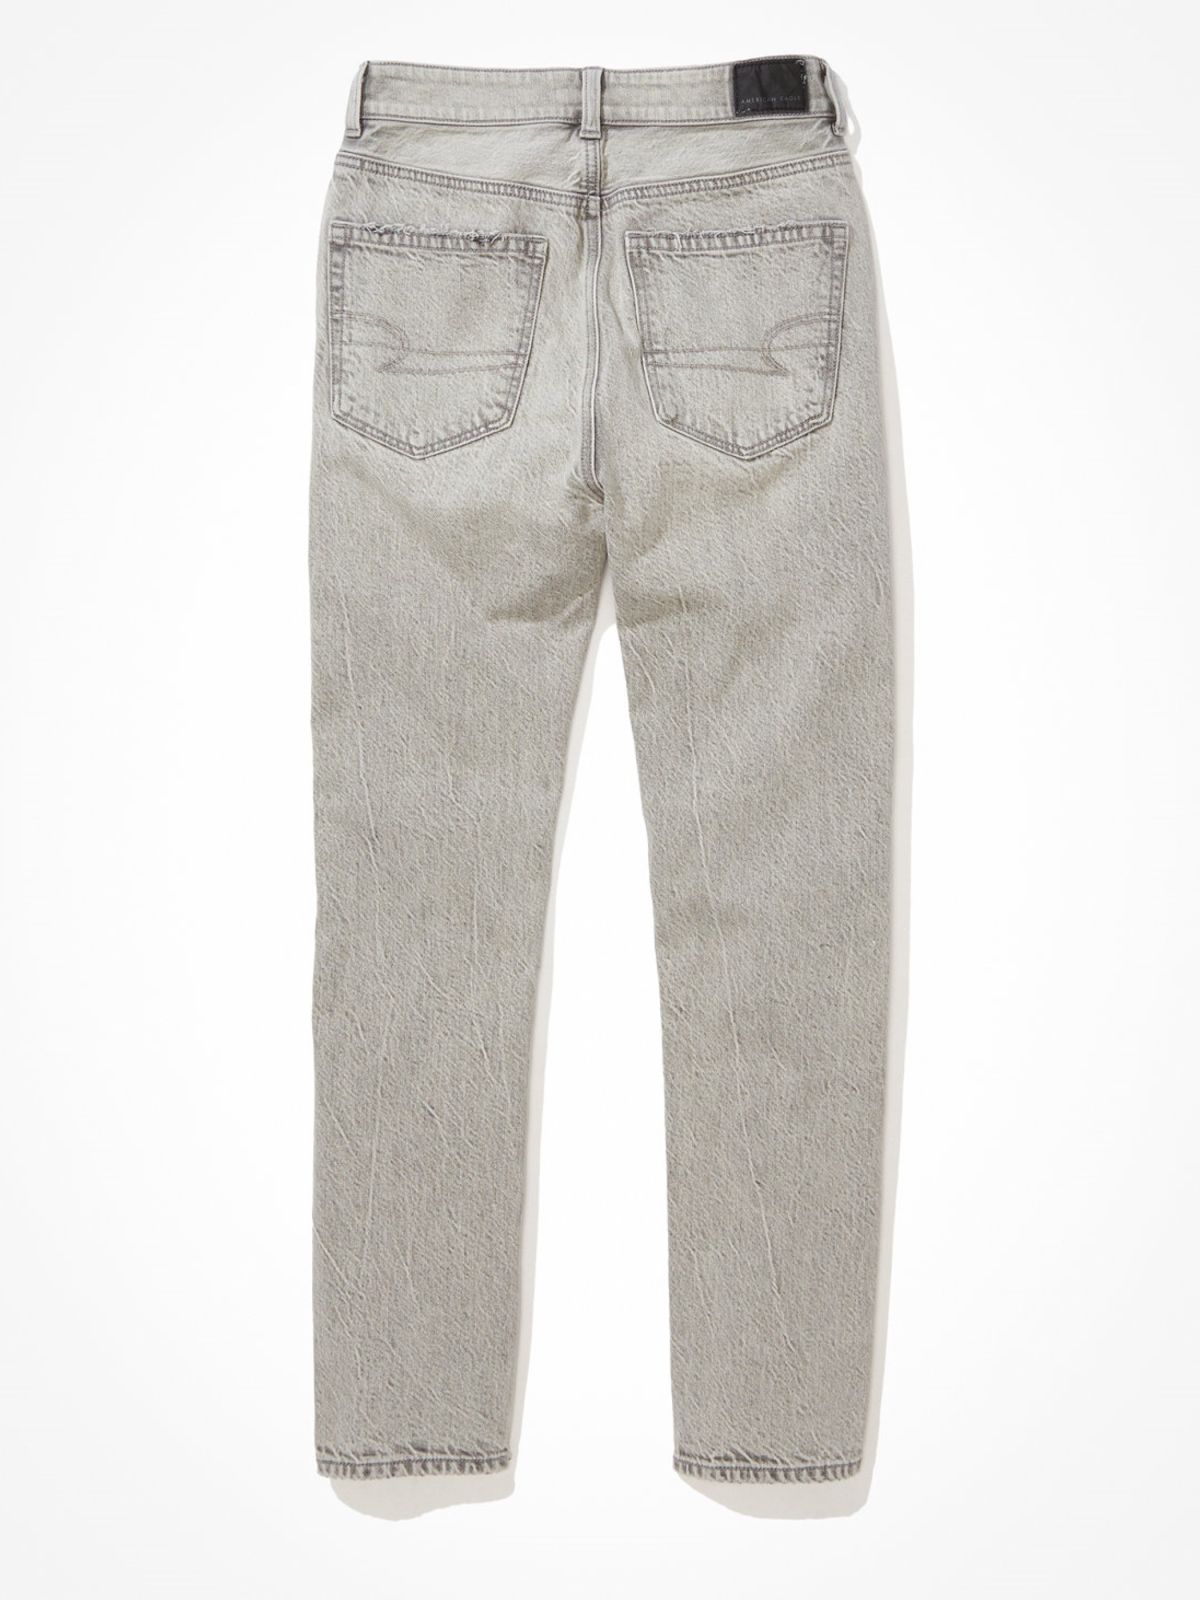  מכנסי ג'ינס ישרים בגזרת MOM עם קרעים של AMERICAN EAGLE